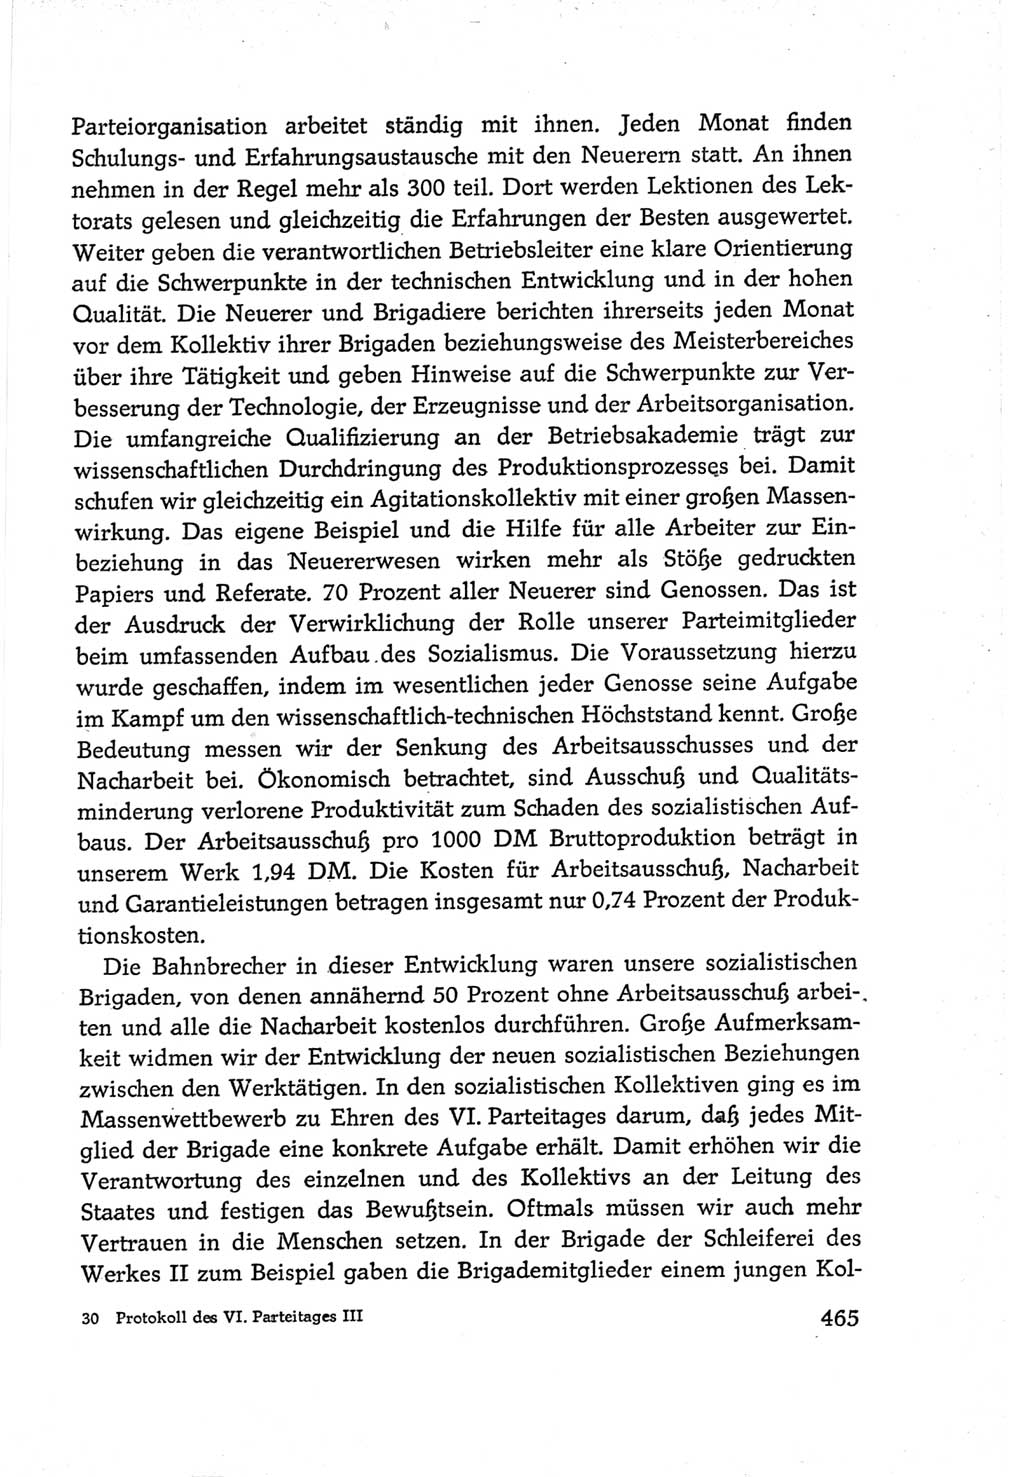 Protokoll der Verhandlungen des Ⅵ. Parteitages der Sozialistischen Einheitspartei Deutschlands (SED) [Deutsche Demokratische Republik (DDR)] 1963, Band Ⅲ, Seite 465 (Prot. Verh. Ⅵ. PT SED DDR 1963, Bd. Ⅲ, S. 465)